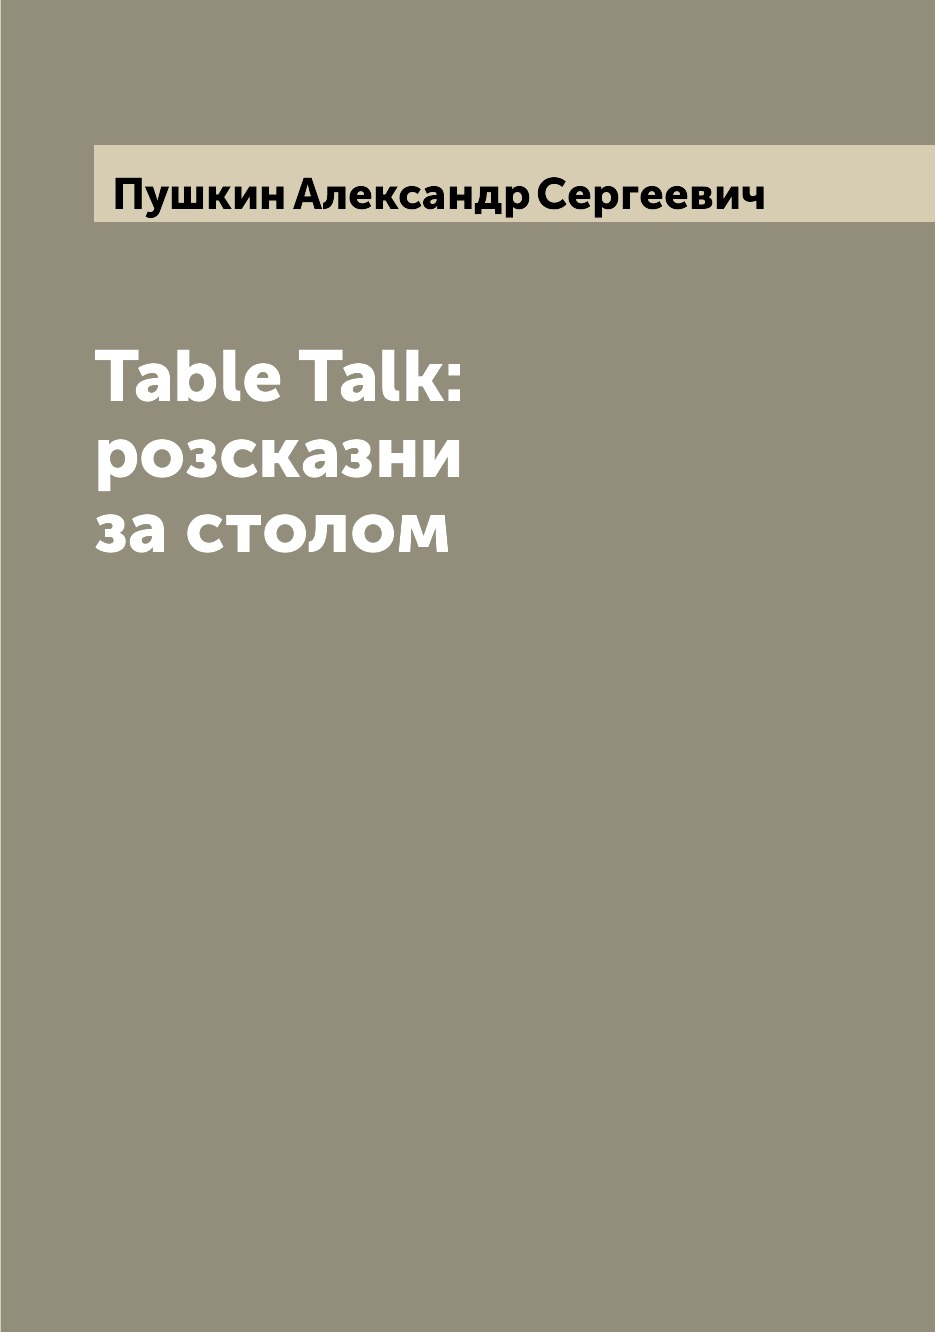 фото Книга table talk: розсказни за столом archive publica